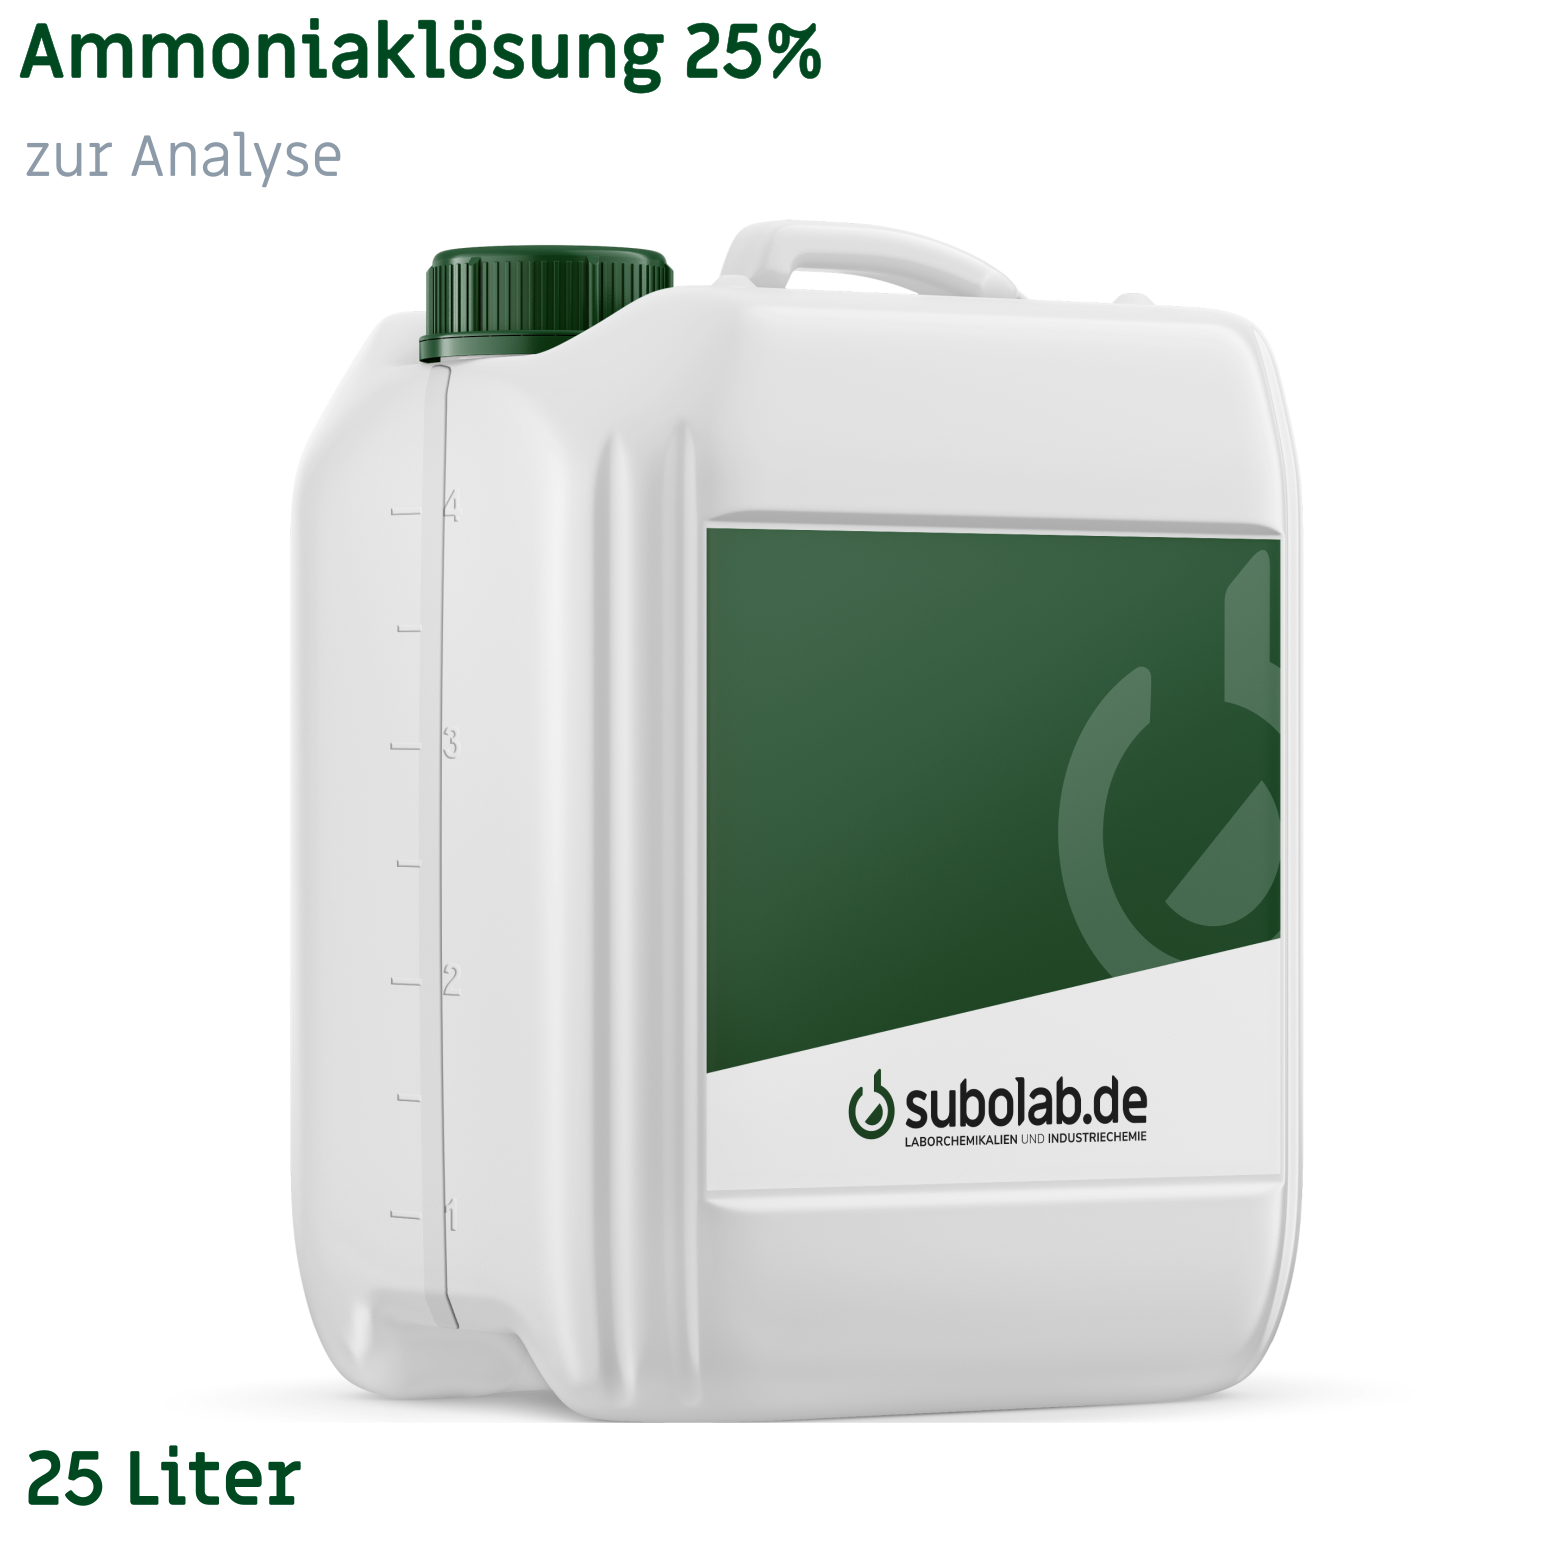 Bild von Ammoniaklösung 25% zur Analyse (25 Liter)